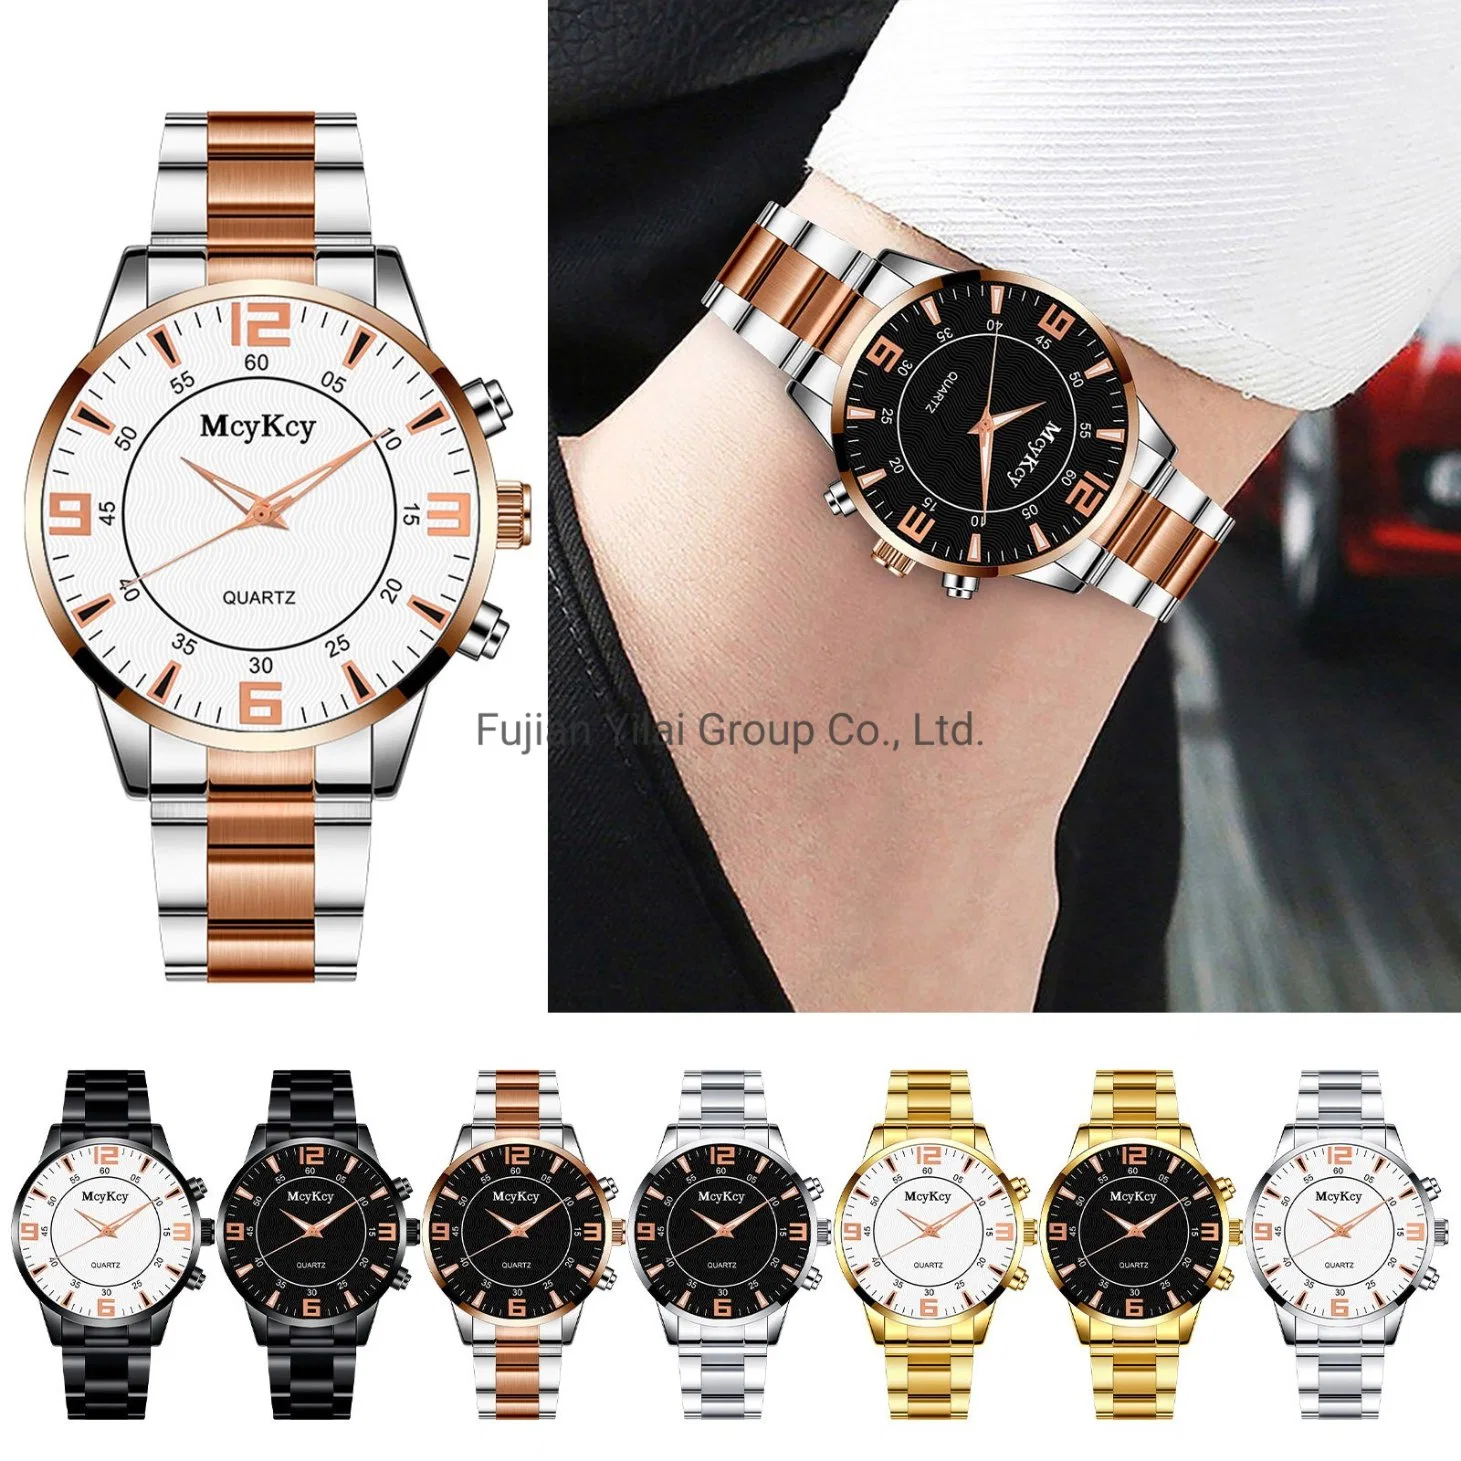 Les hommes de regarder en haut de la marque Business Watch de Luxe homme imperméable en acier de sexe masculin Date et heure de l'horloge Heure